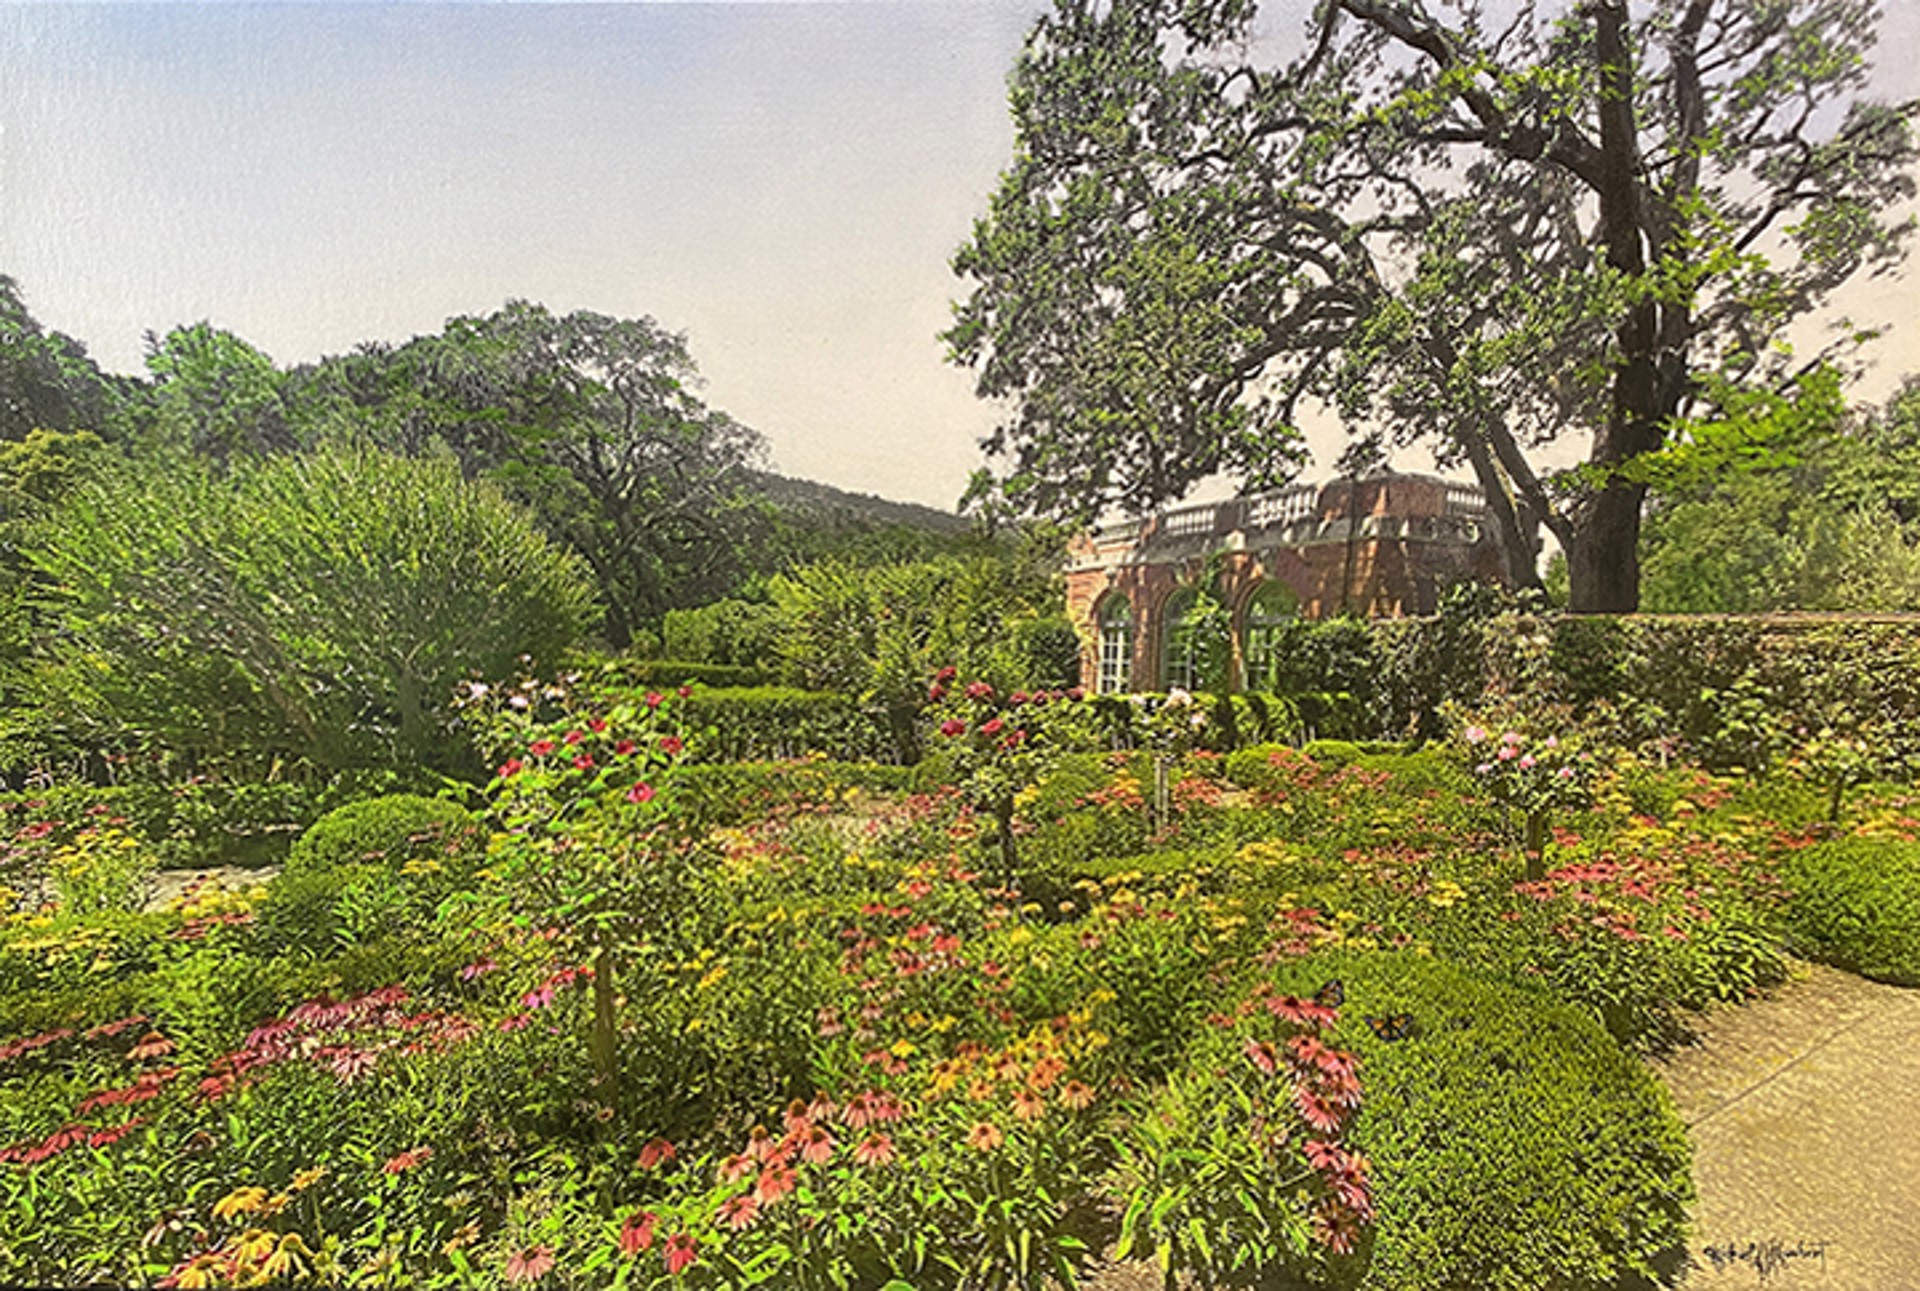 Filoli Rose Garden by Michael A. F. Gumbert